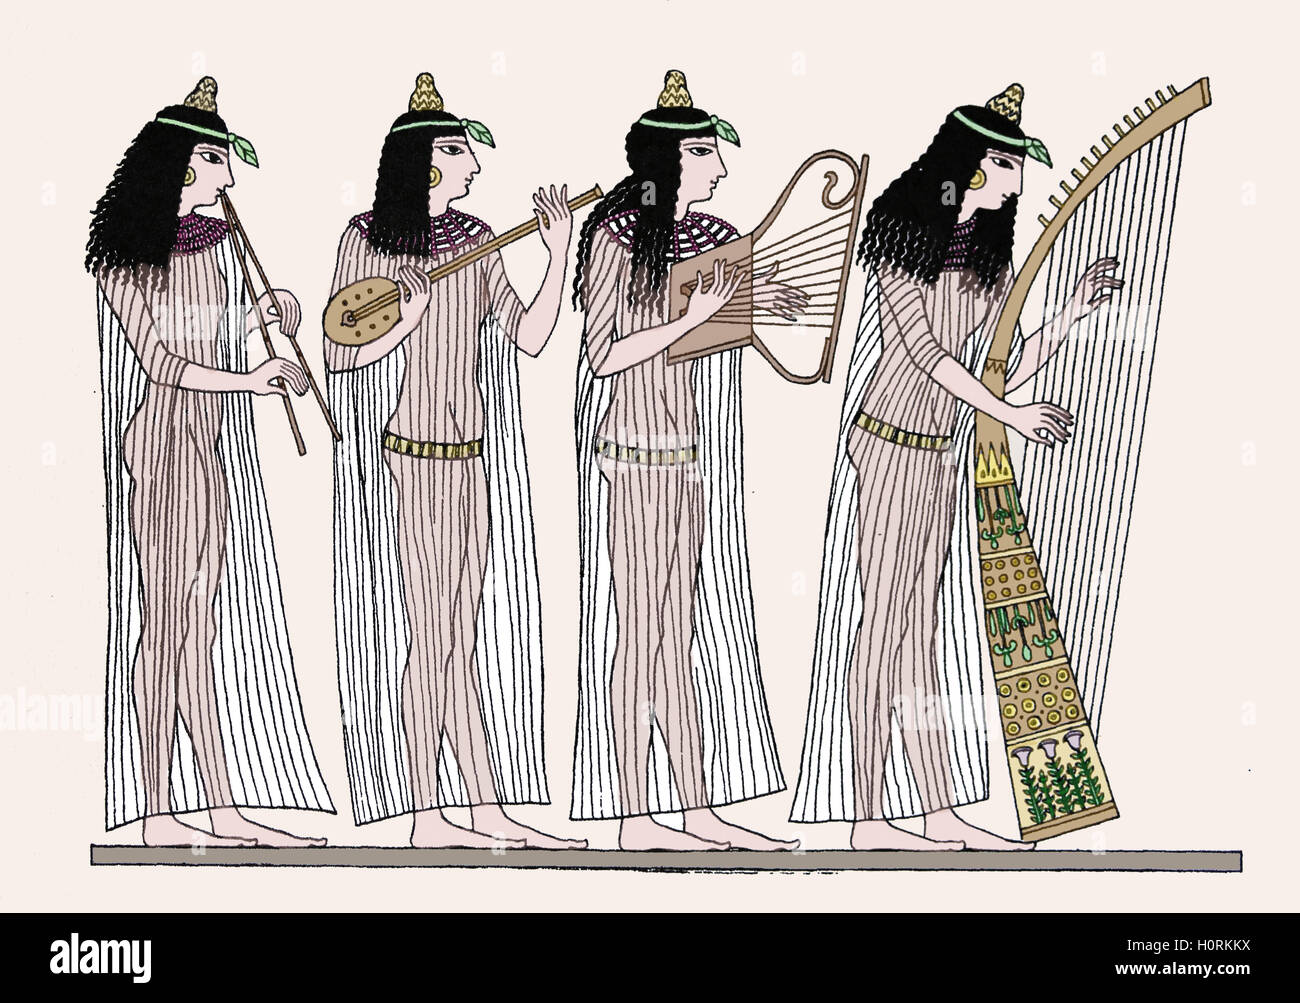 Antico Egitto. Nuovo Impero. Il quartetto di donne musicisti: doppio flauto e chitarra, flauto, arpa. Incisione. Colore. Xix c. Foto Stock